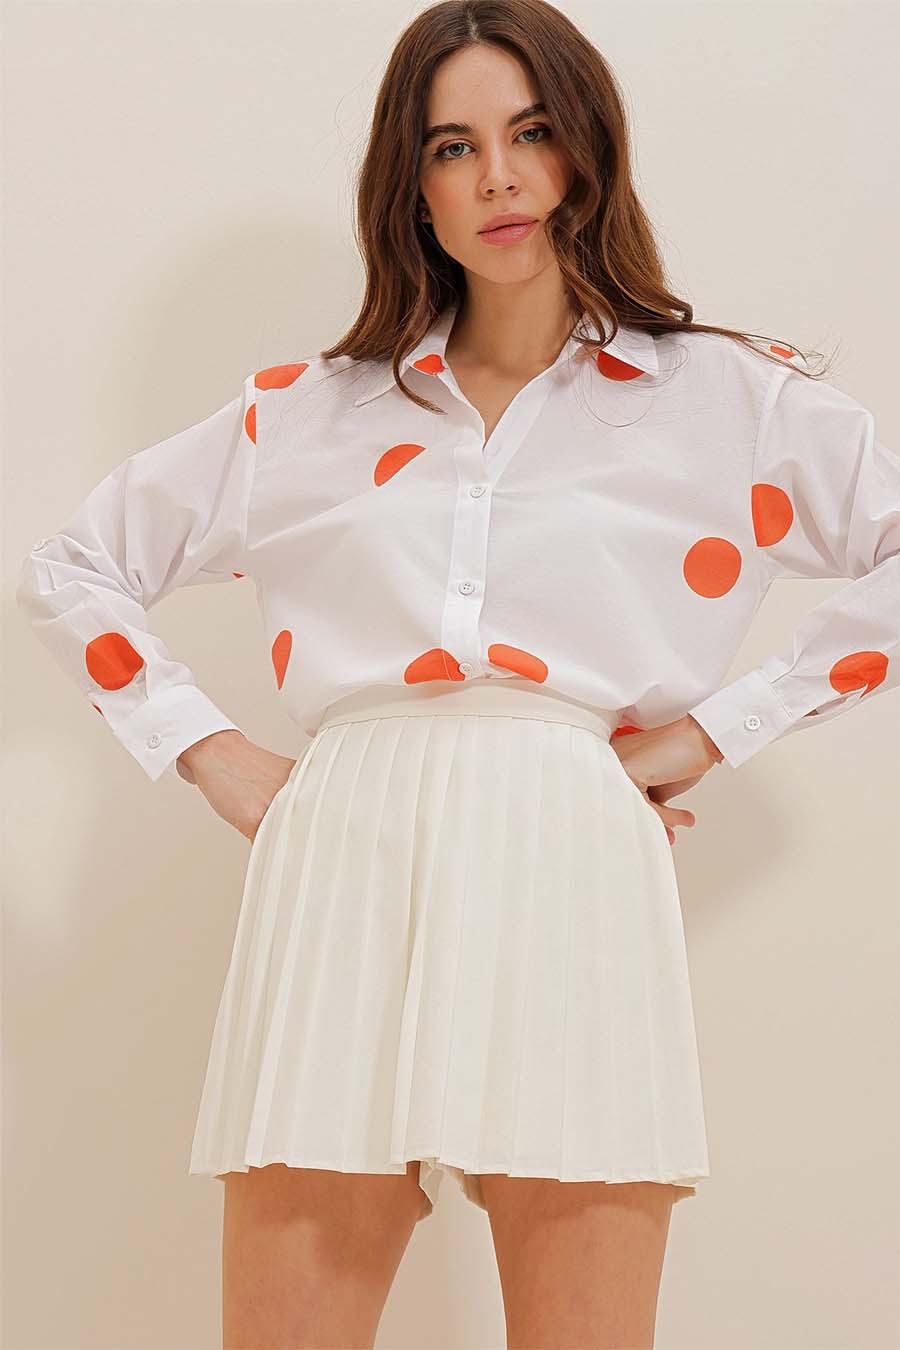 Γυναικείο πουκάμισο Millie, Λευκό/Πορτοκάλι 5